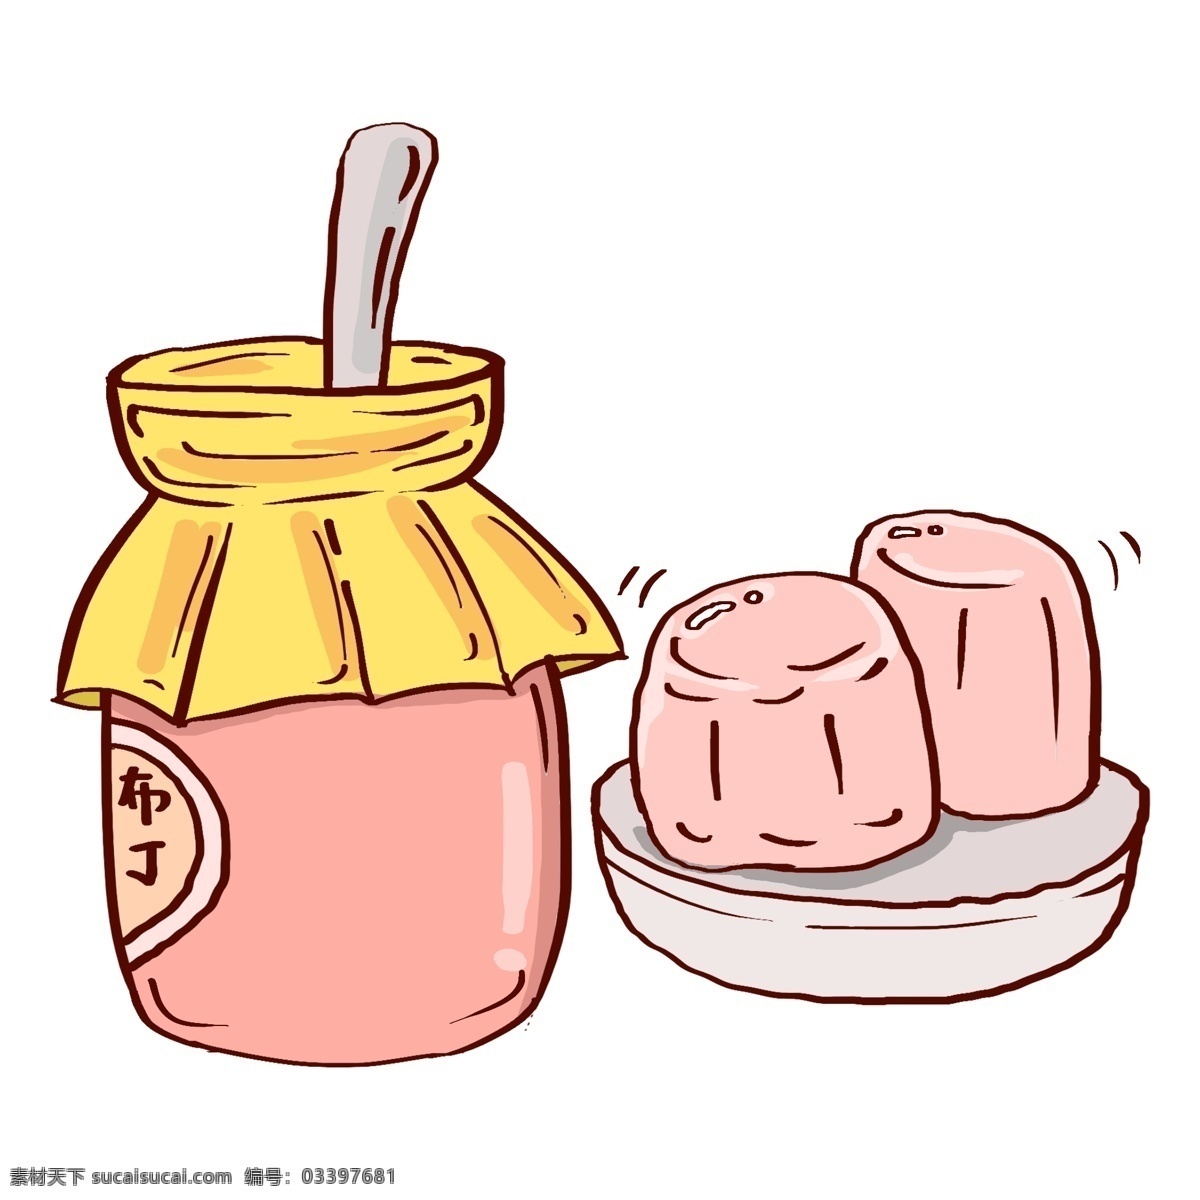 美味 粉色 布丁 插画 美味的布丁 粉色布丁 食物 零食 甜食插画 美味的零食 零食插画 美味果冻